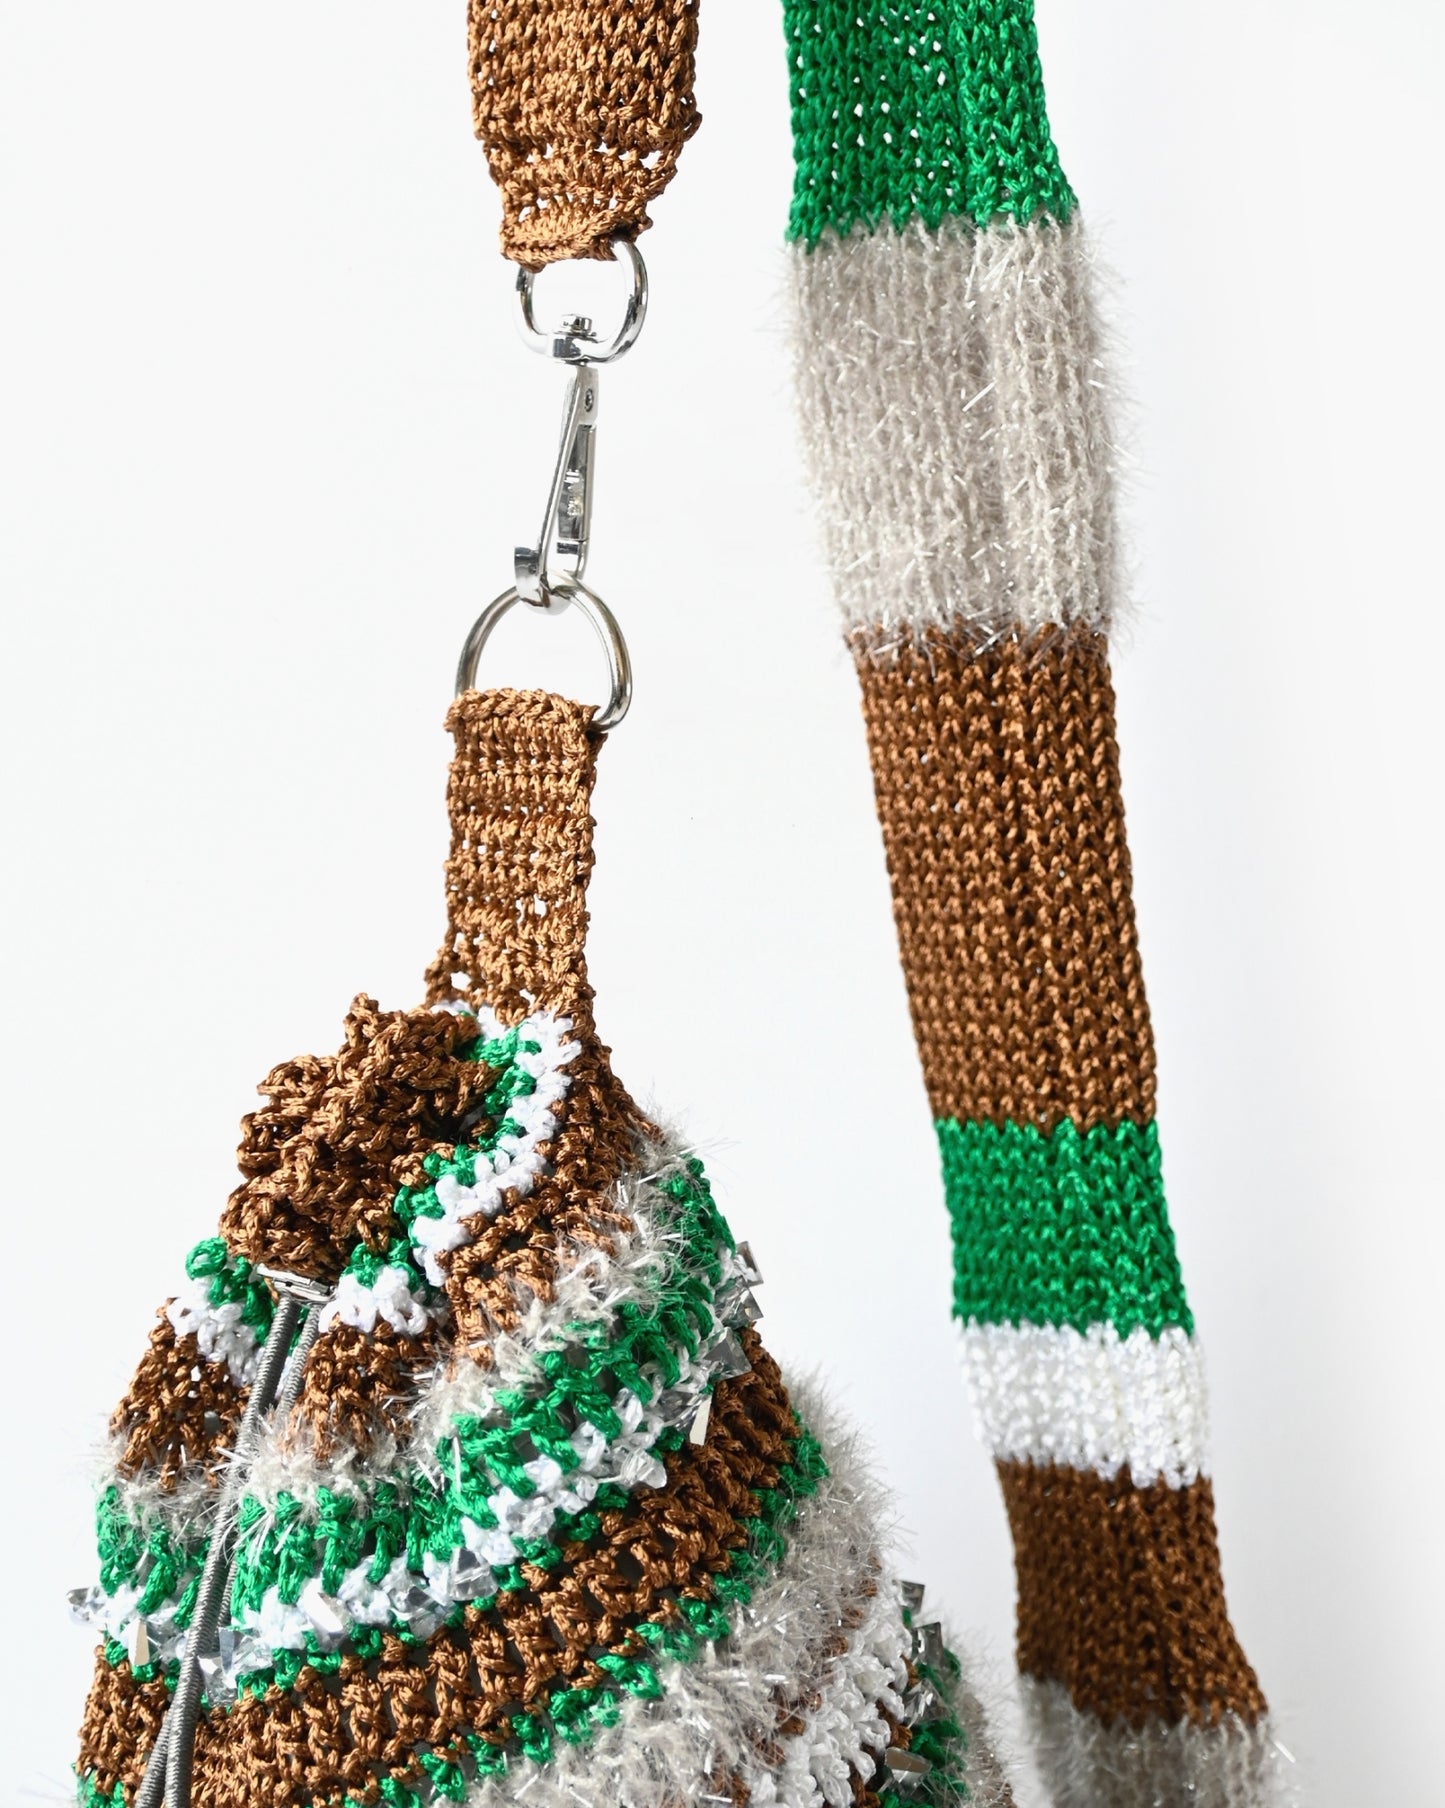 Hand Knitting Shoulder Bag 02